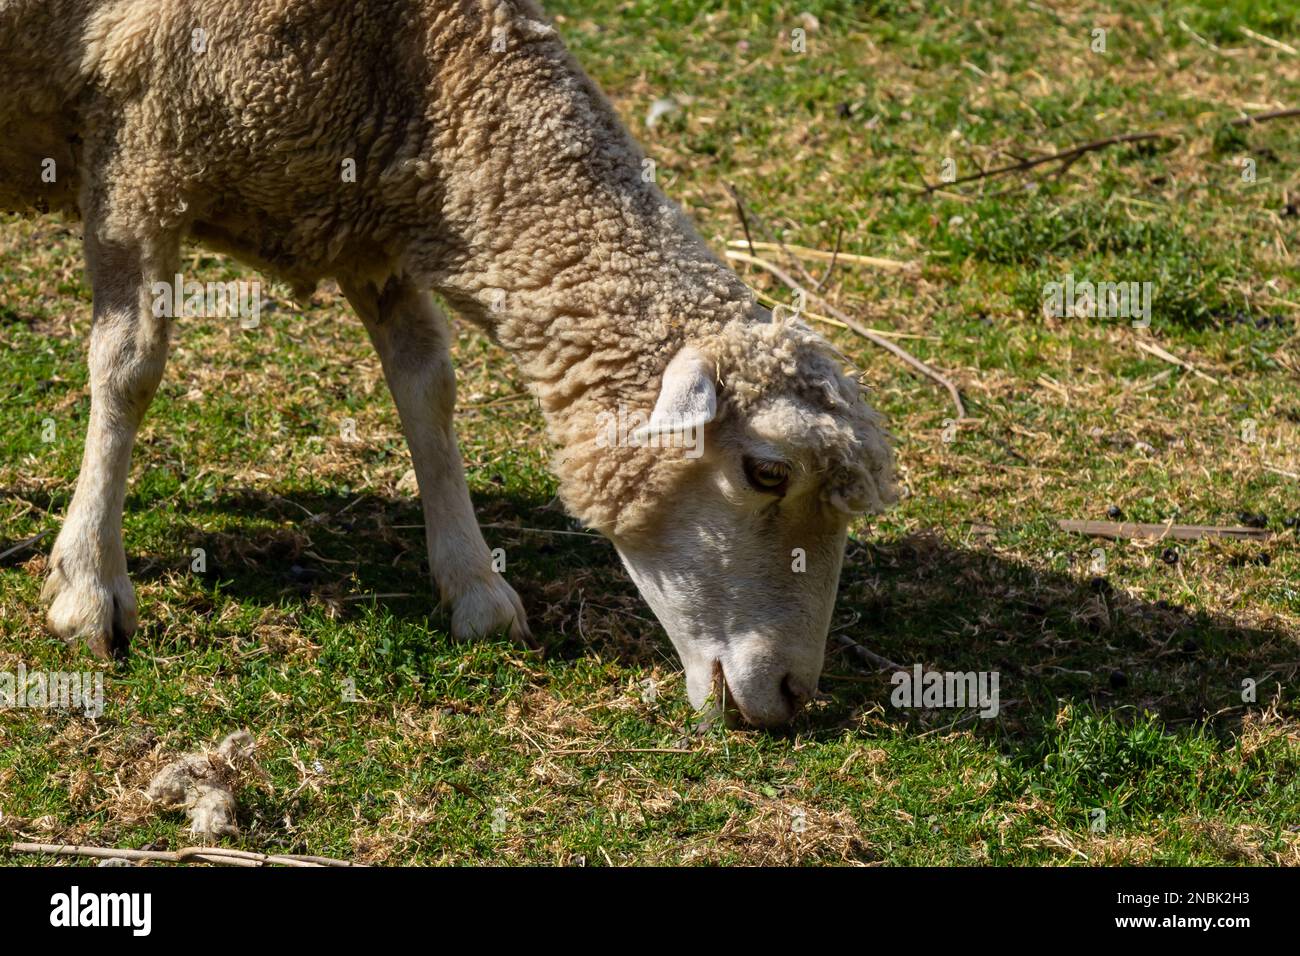 Die Schafe weiden auf dem Hof, pflegen Haustiere. Warmer Sommer und harte Agrararbeit in Provinzen. Stockfoto